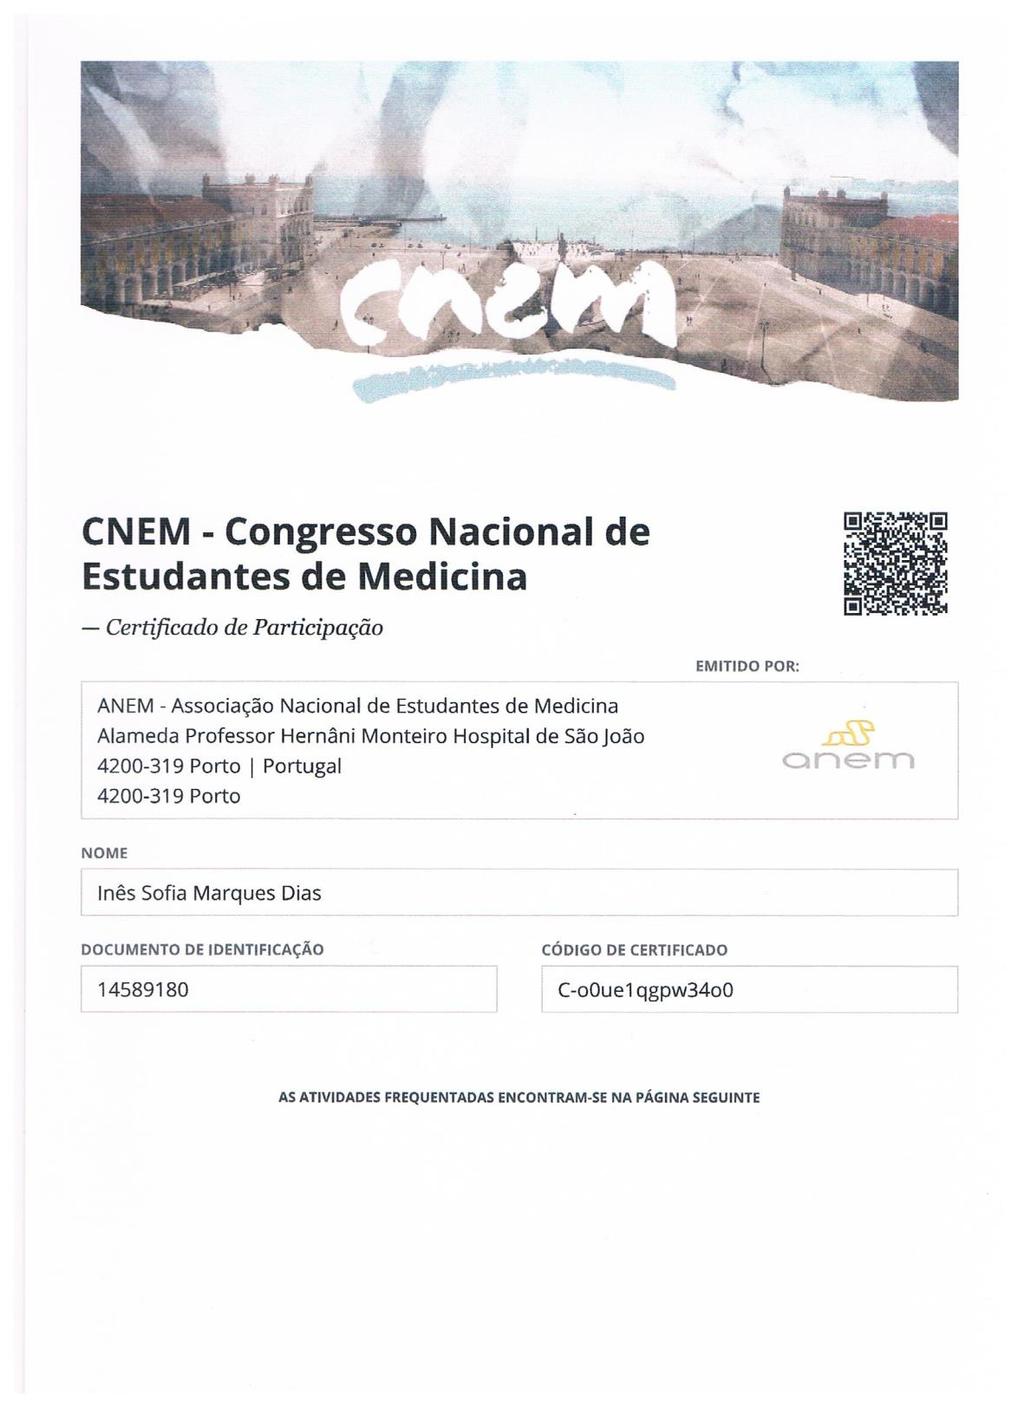 Certificado de participação no Congresso Nacional de